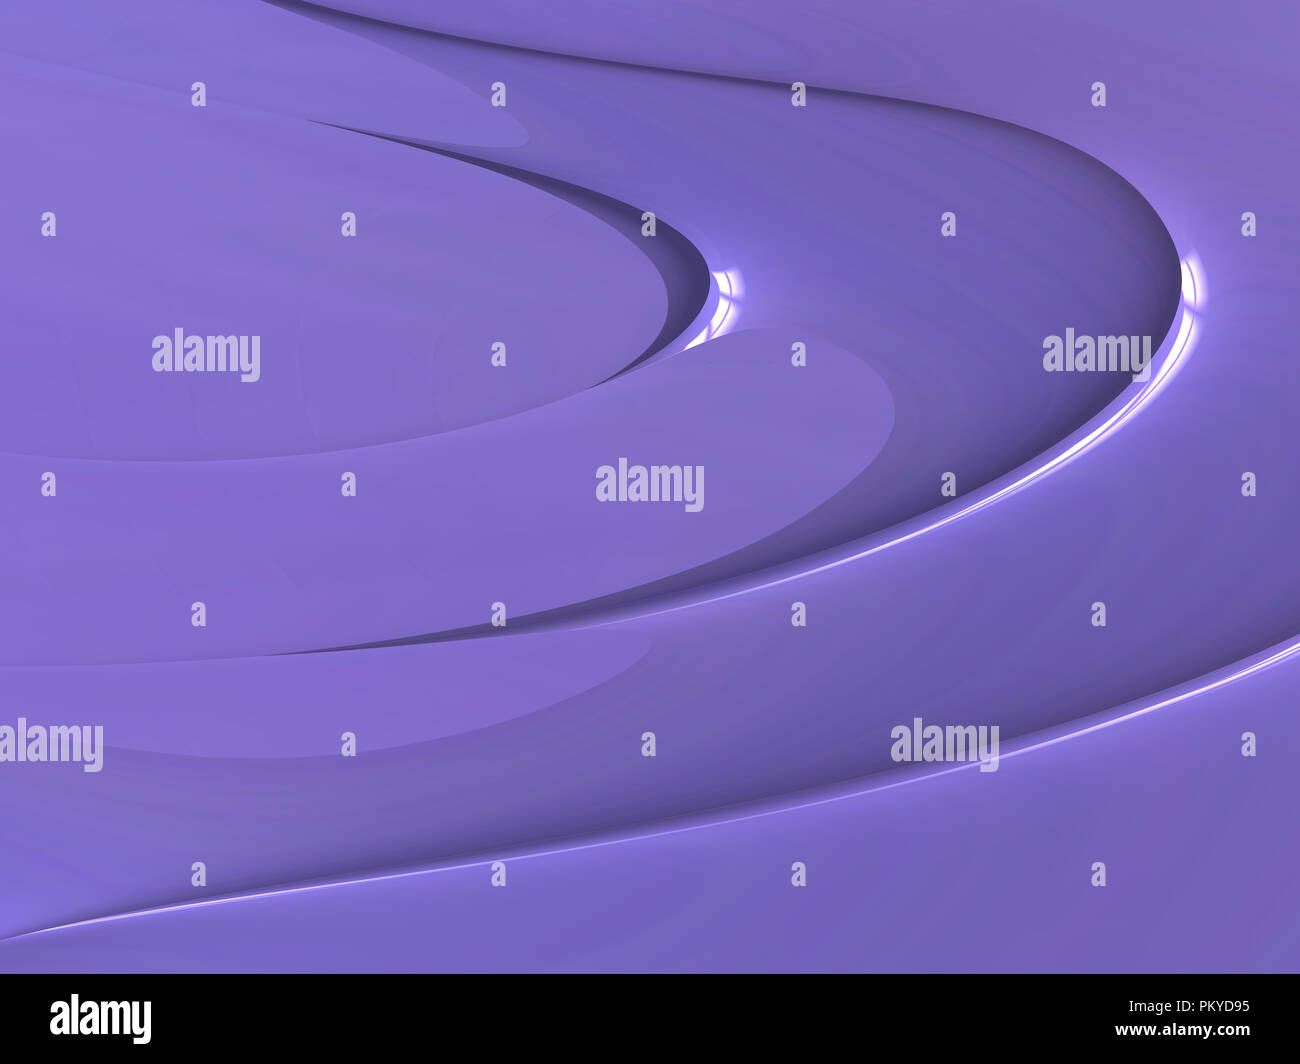 Einfache Zusammenfassung Hintergrund Design von delikaten Glanz Lila Lila Farbe Kurven in 3D-Effekt ideal für Präsentation oder Desktop wallaper Stockfoto